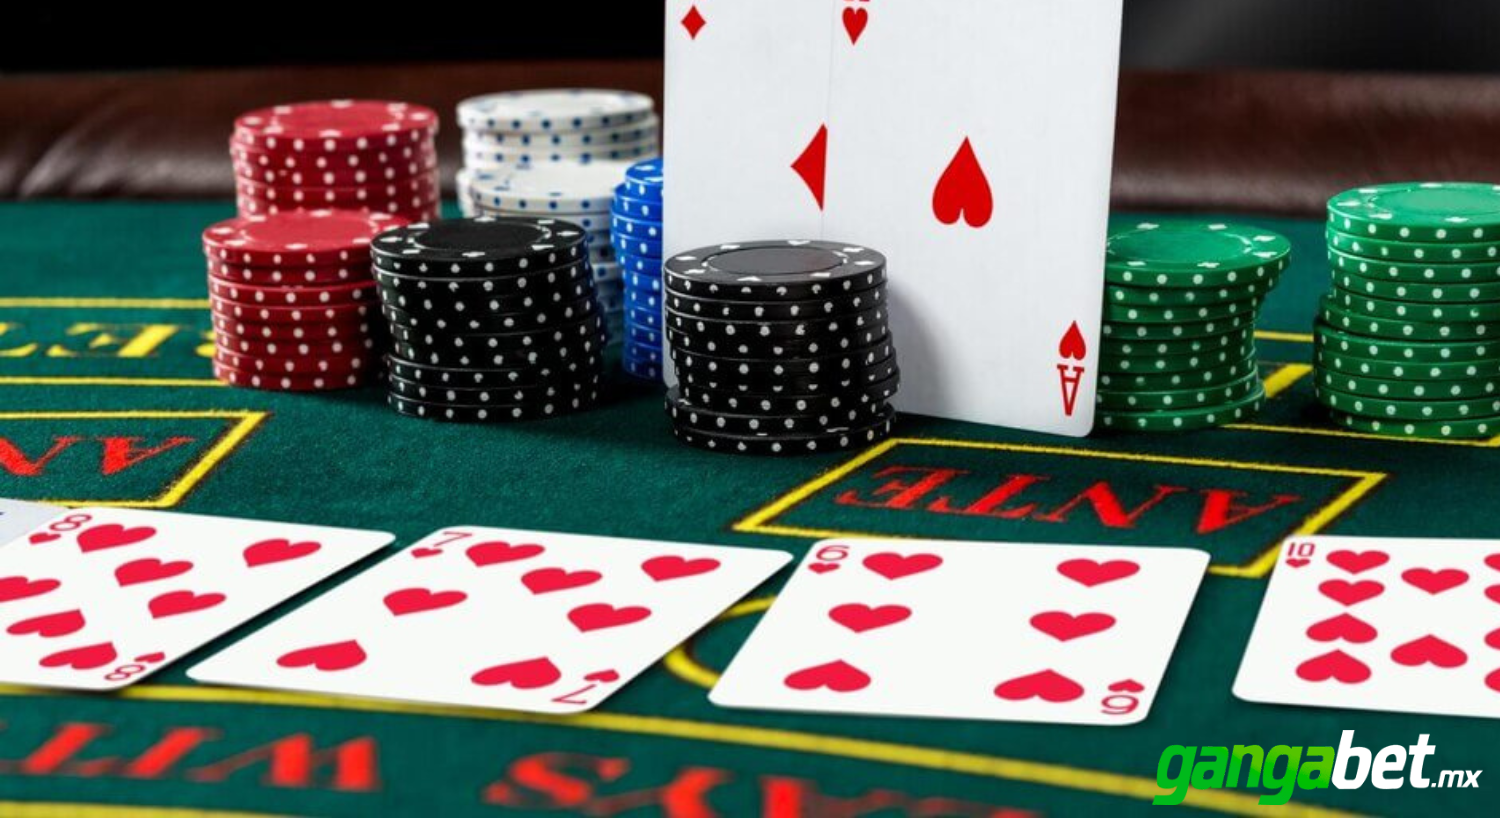 Casino online: ventajas y consejos para jugar